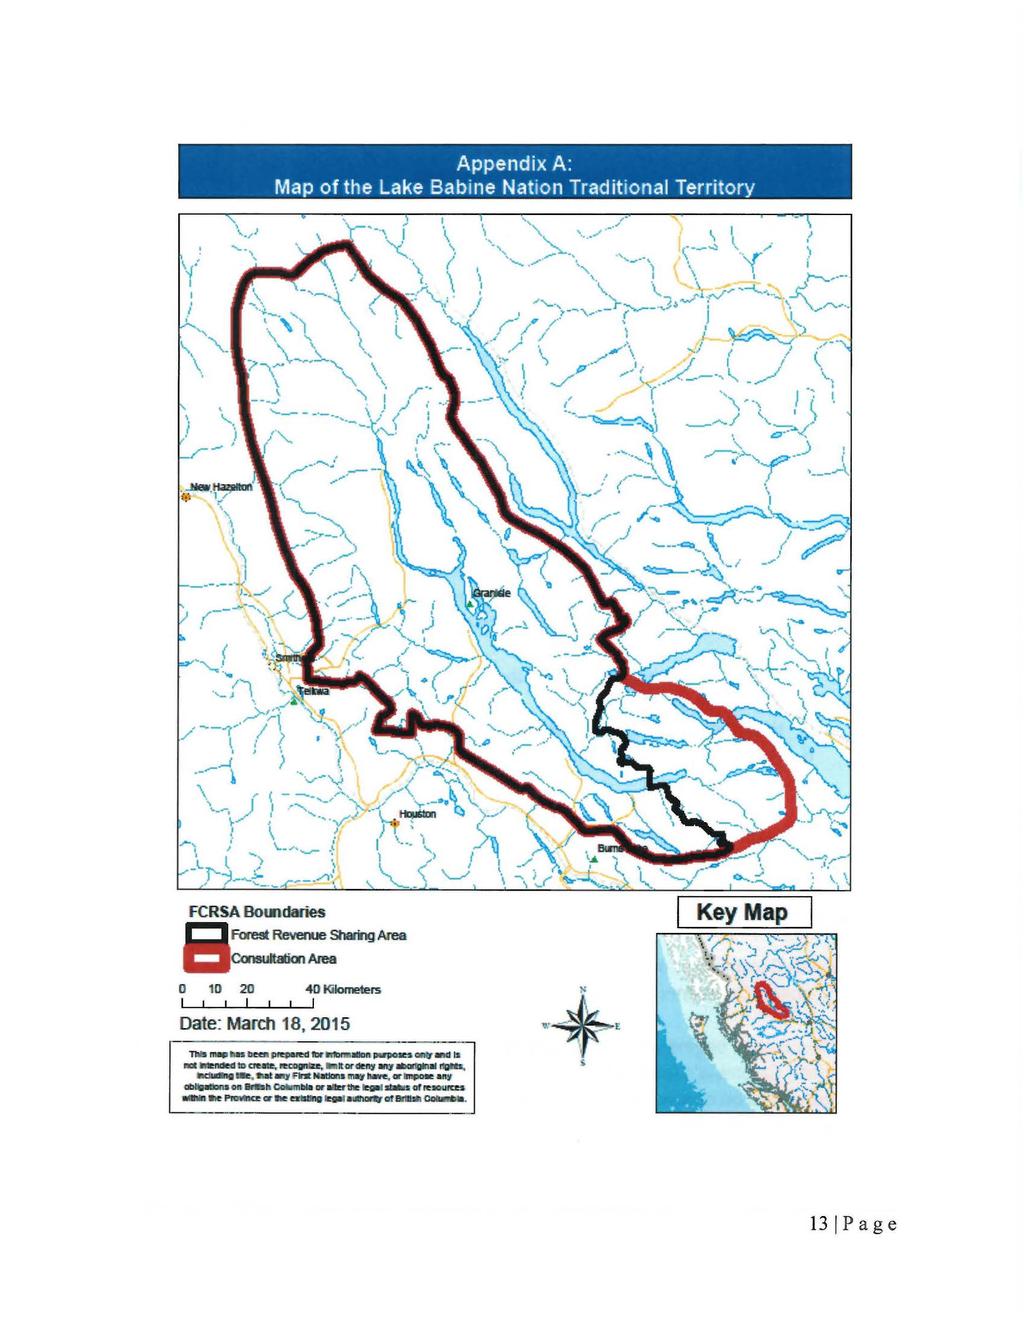 Appendix A: Map of the Lake Babine Nation Traditional Territory FCRSA Bomdalies 8 fore9t Reveooe Shamg Area Consultation Area 0 10 20 I I 40 Kilometers I Date: Marcil 18, 2015 TID!MP-Ilea!